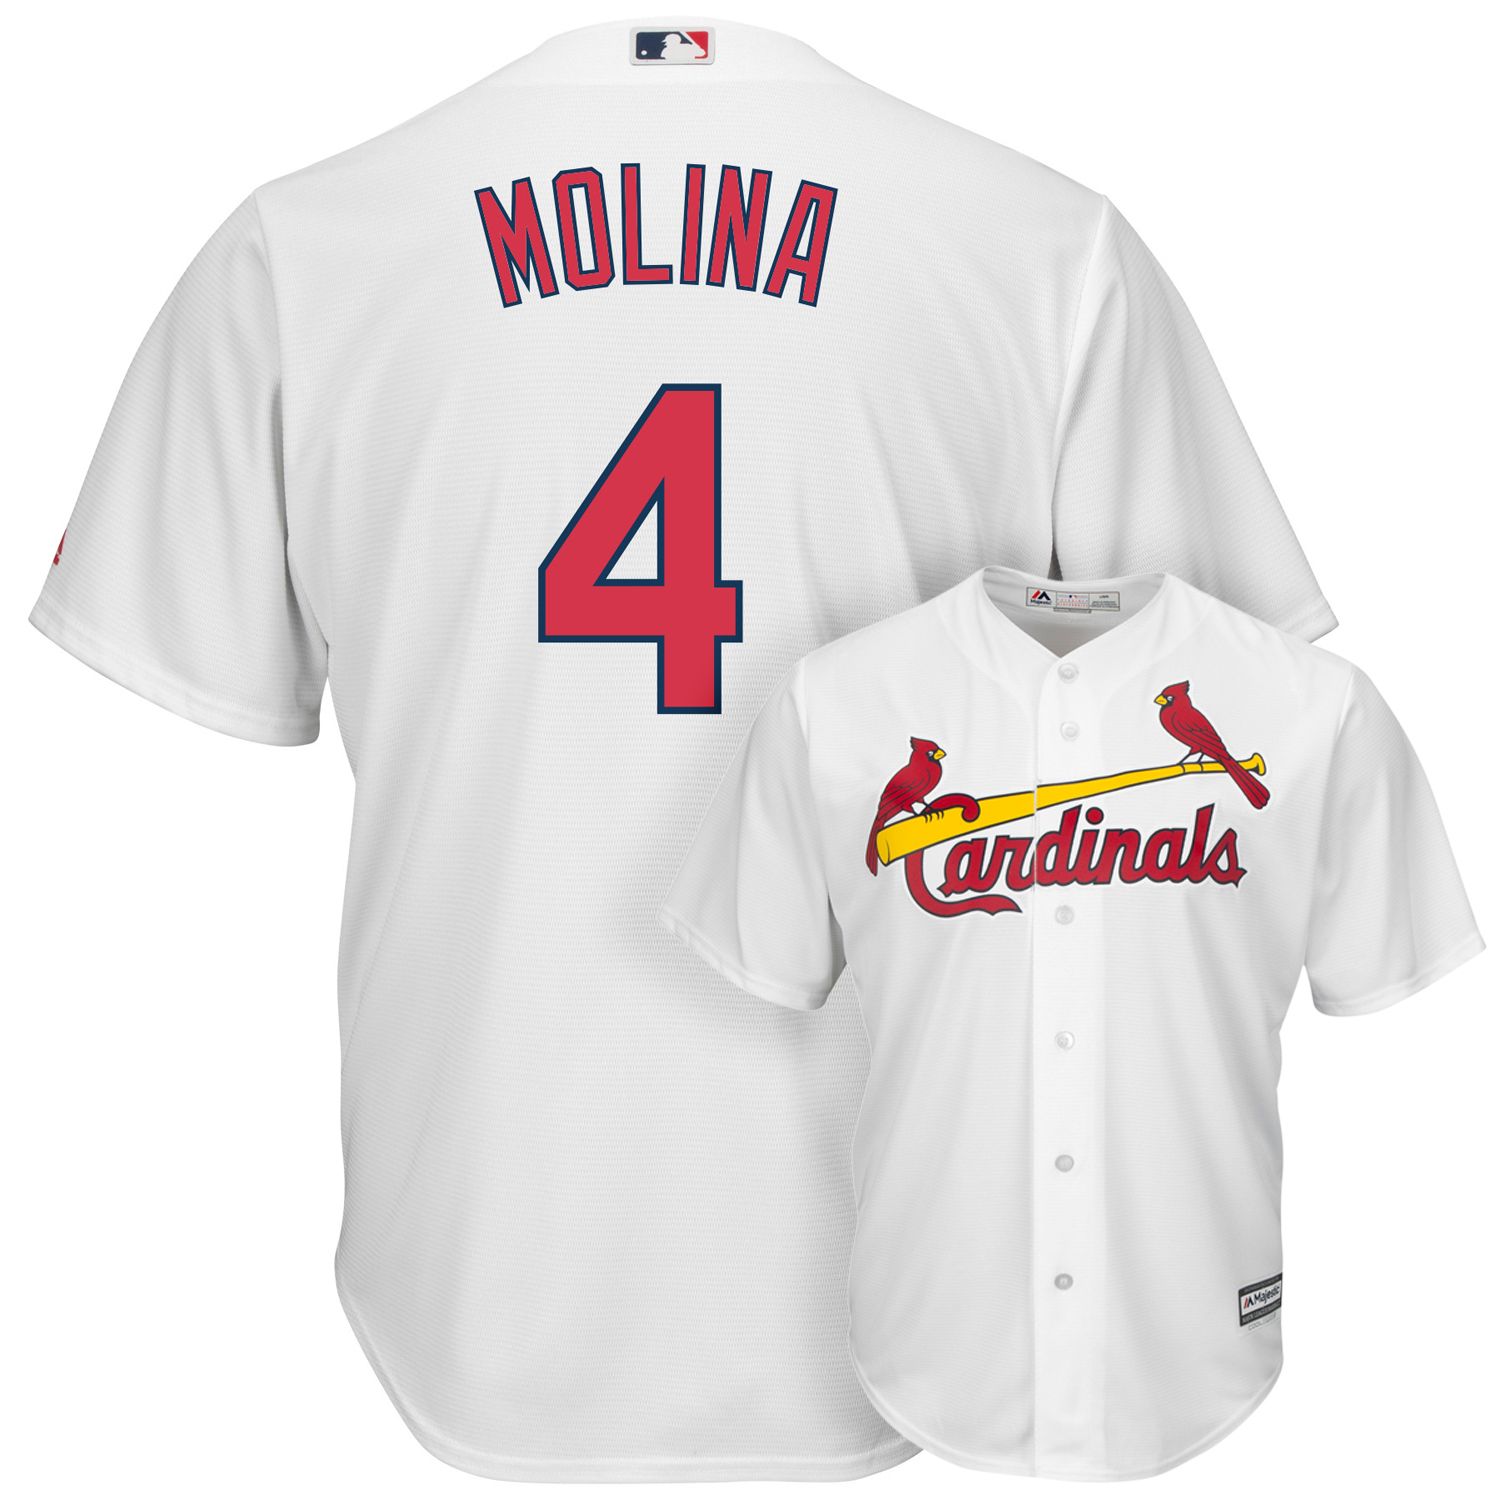 cardinals cool base jersey